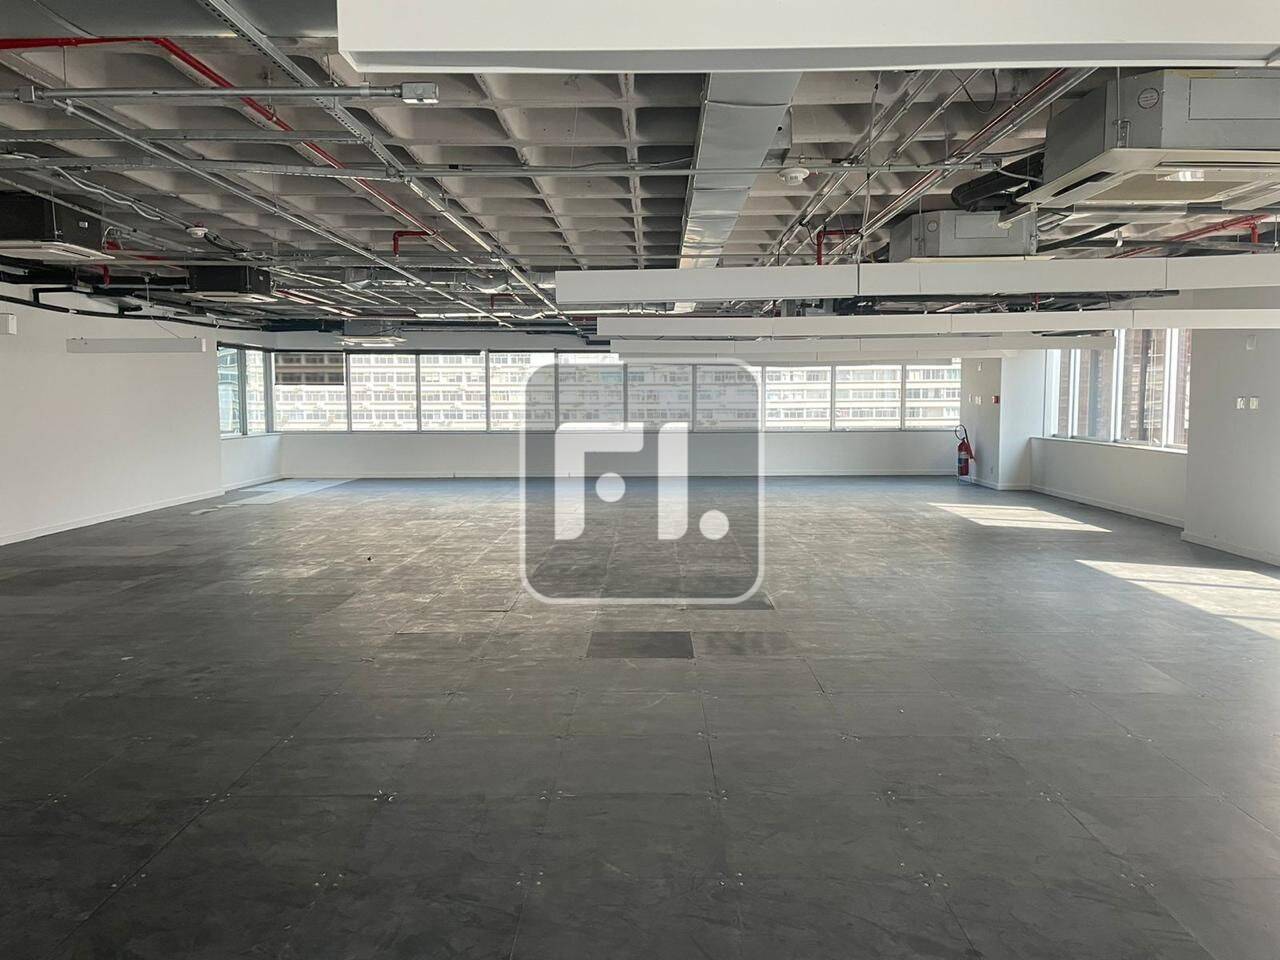 Conjunto comercial com 363 m² na Bela vista para Locação, com piso elevado com ardósia,
